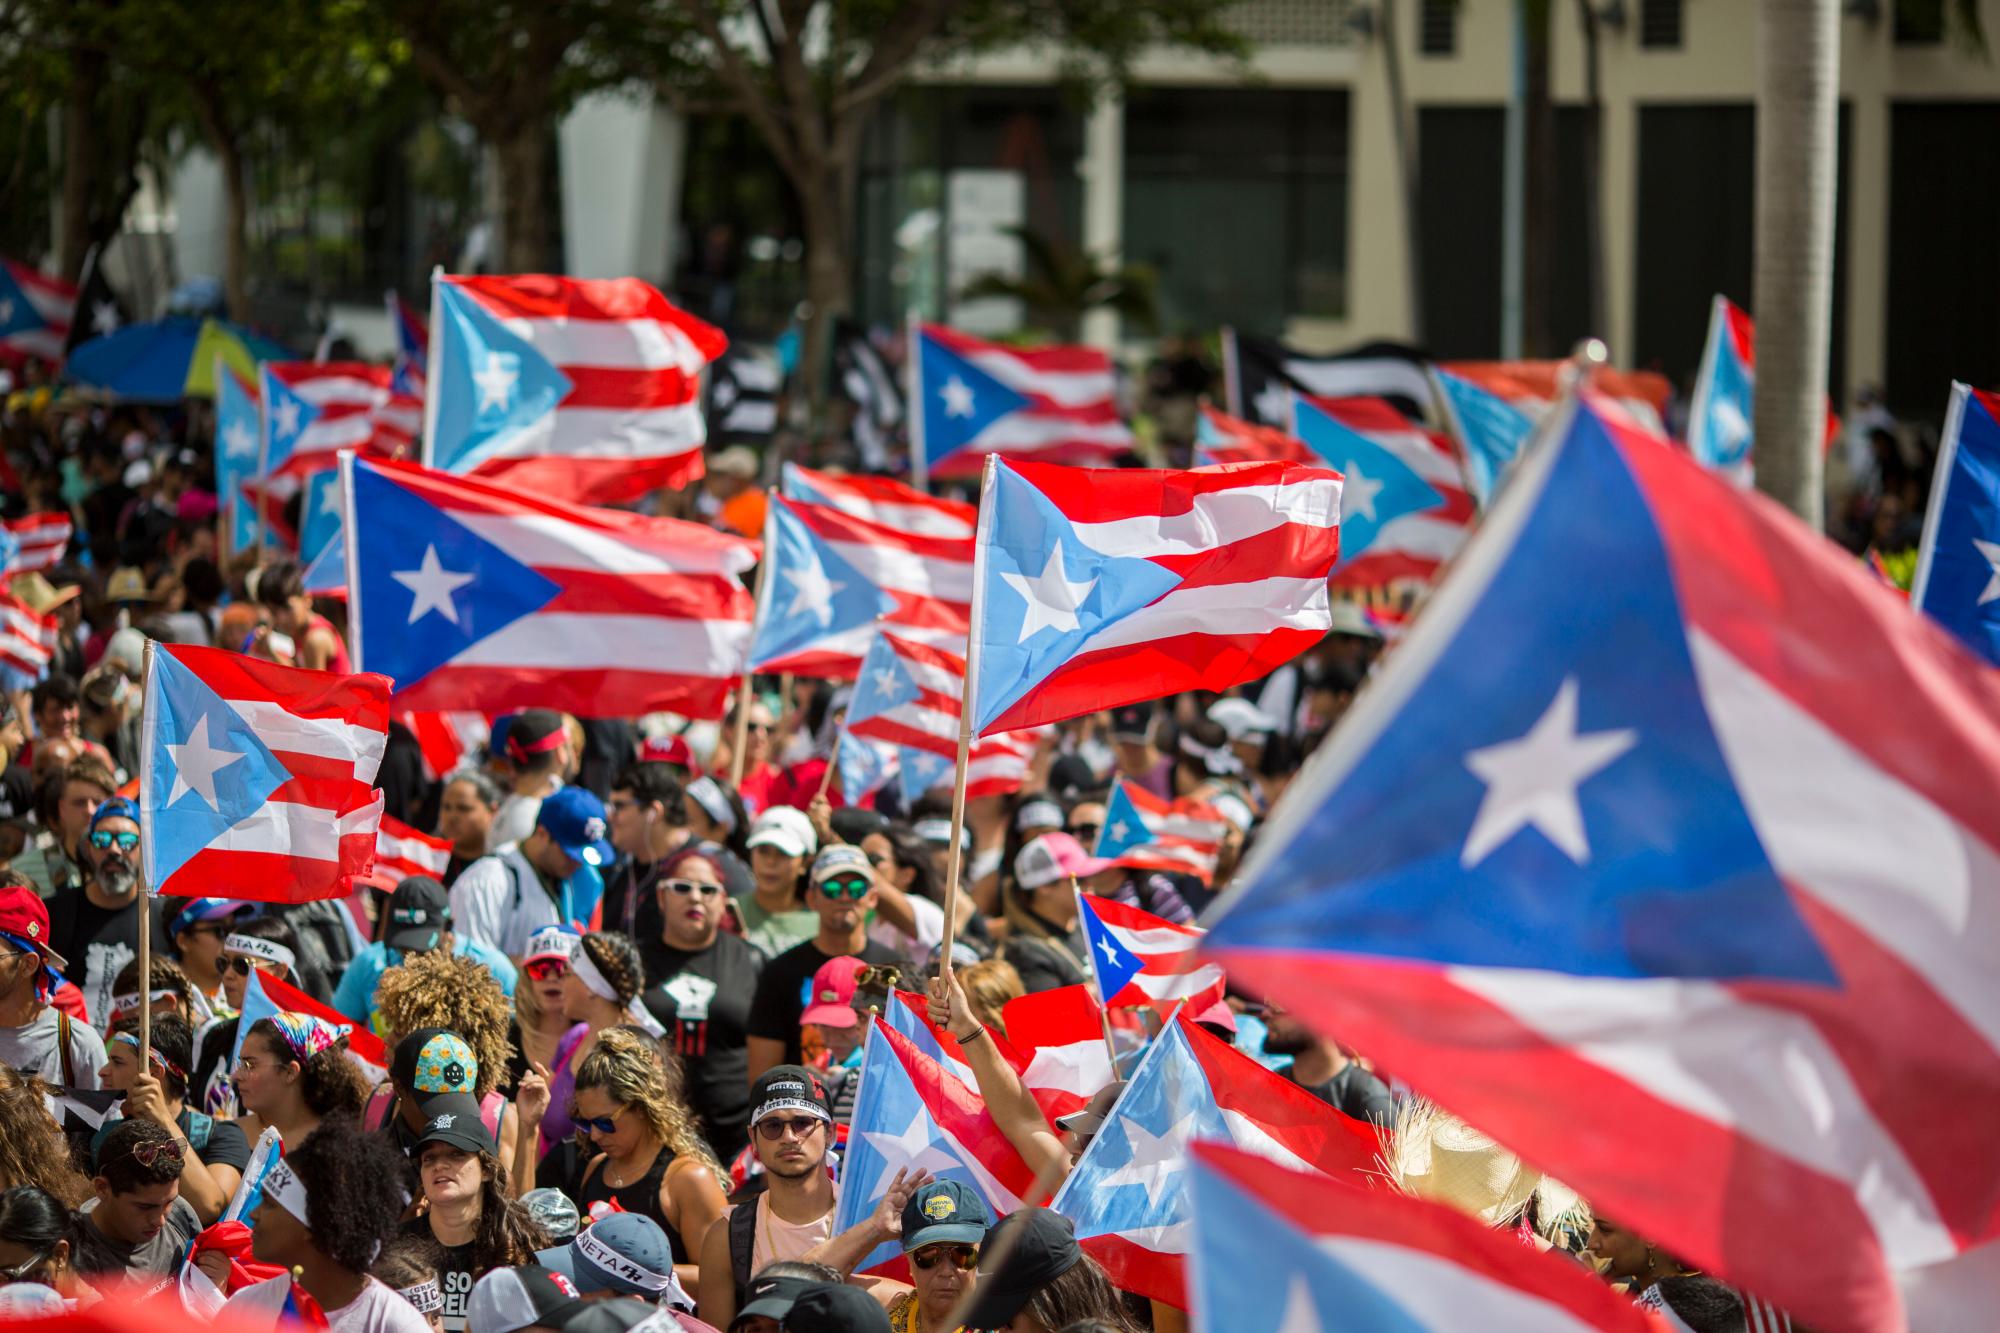 La gente se reúne para celebrar la renuncia del gobernador Ricardo Rosselló, quien anunció durante la noche que renunciará el 2 de agosto luego de semanas de protestas por charlas en línea obscenas y misóginas y filtradas, en San Juan, Puerto Rico, el jueves 25 de julio de 2019. 